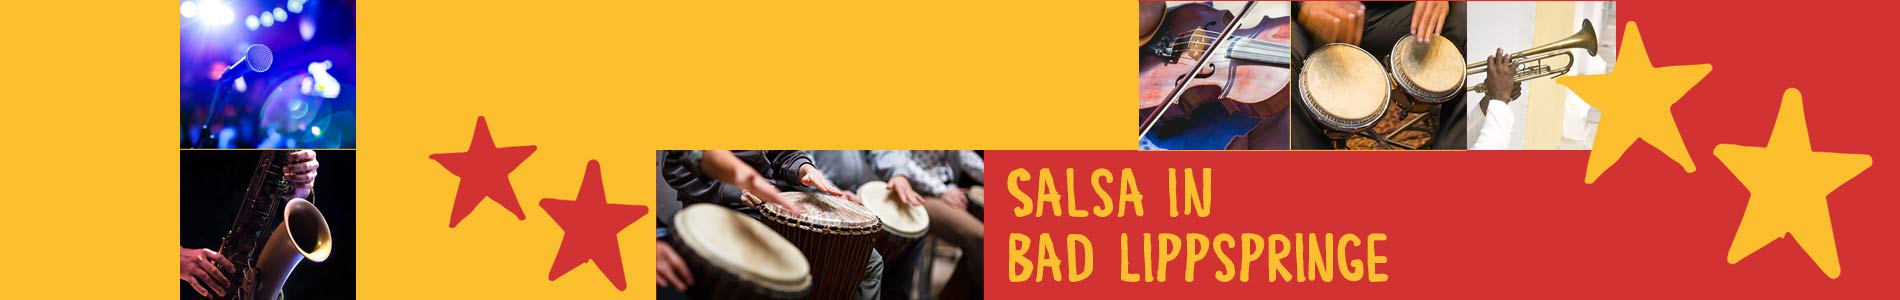 Salsa in Bad Lippspringe – Salsa lernen und tanzen, Tanzkurse, Partys, Veranstaltungen